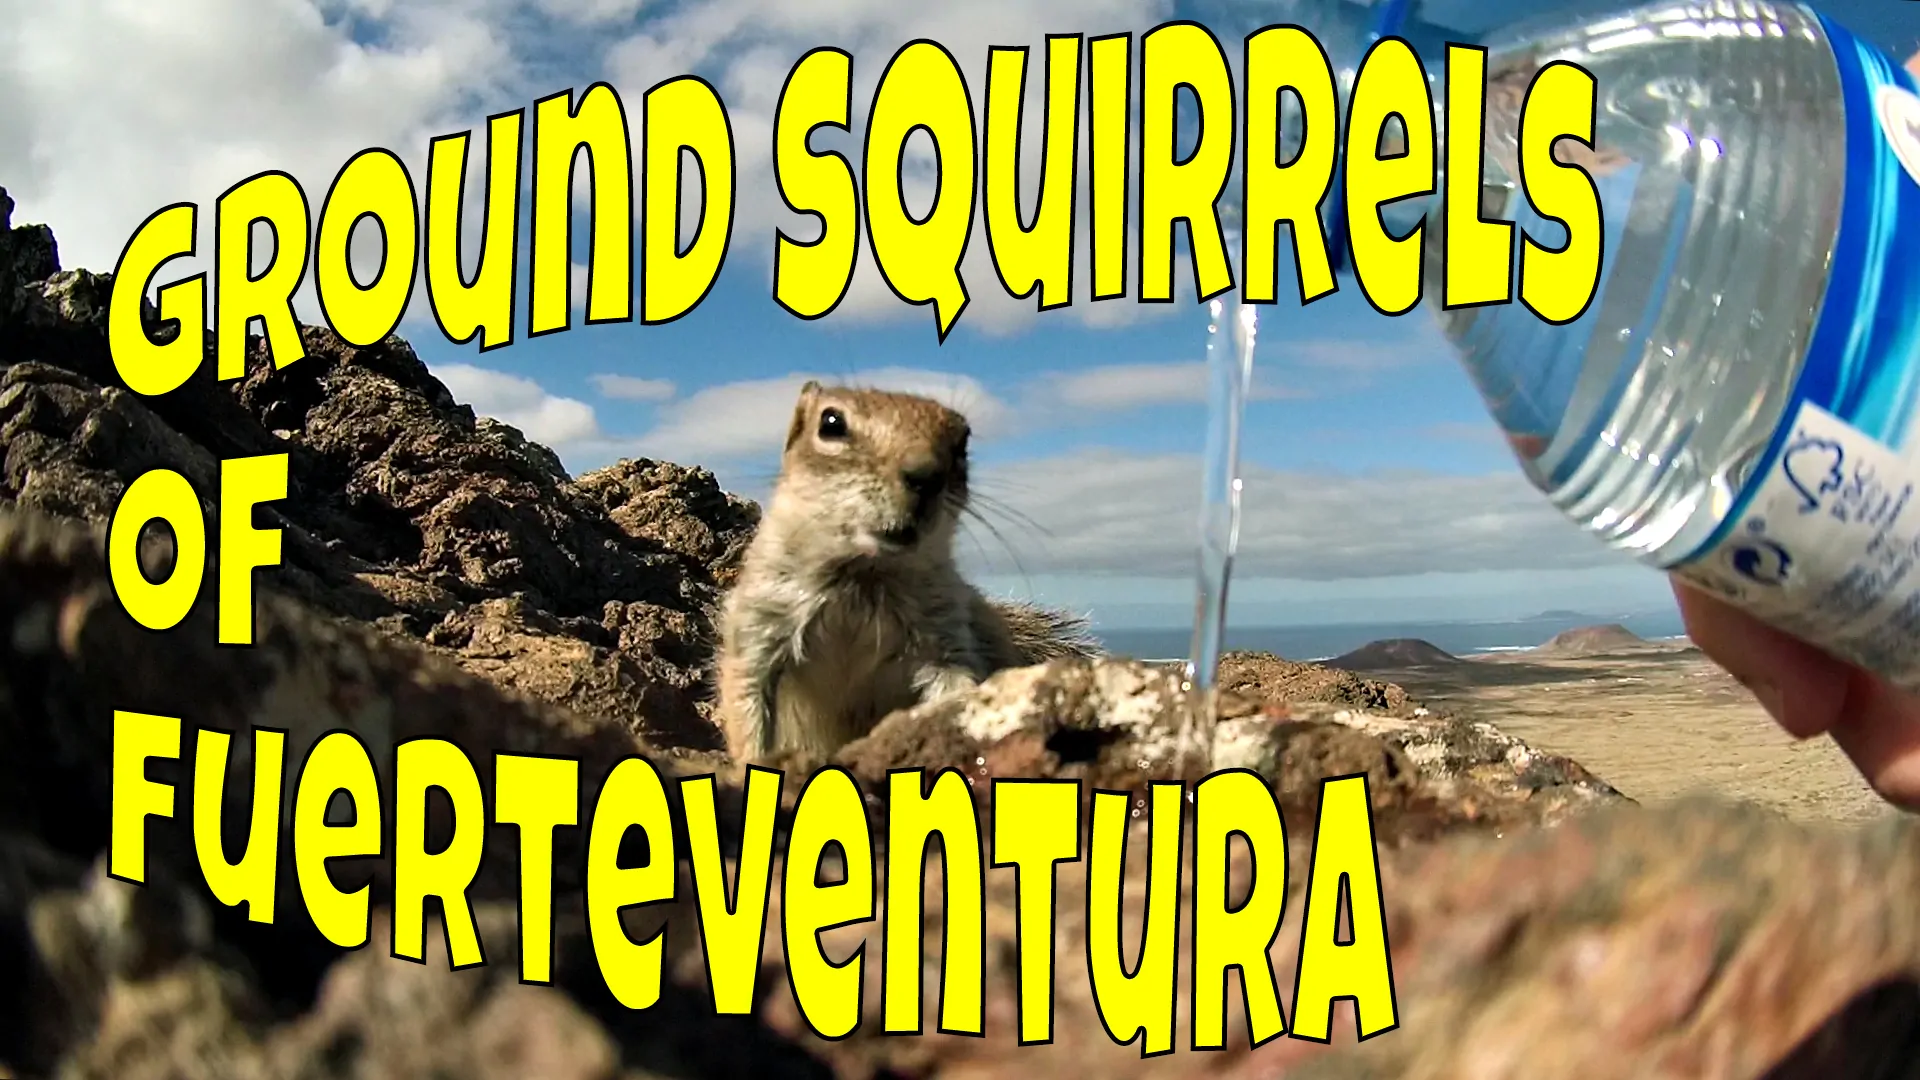 Fuerteventura Squirrels or Fuerteventura Chipmunks